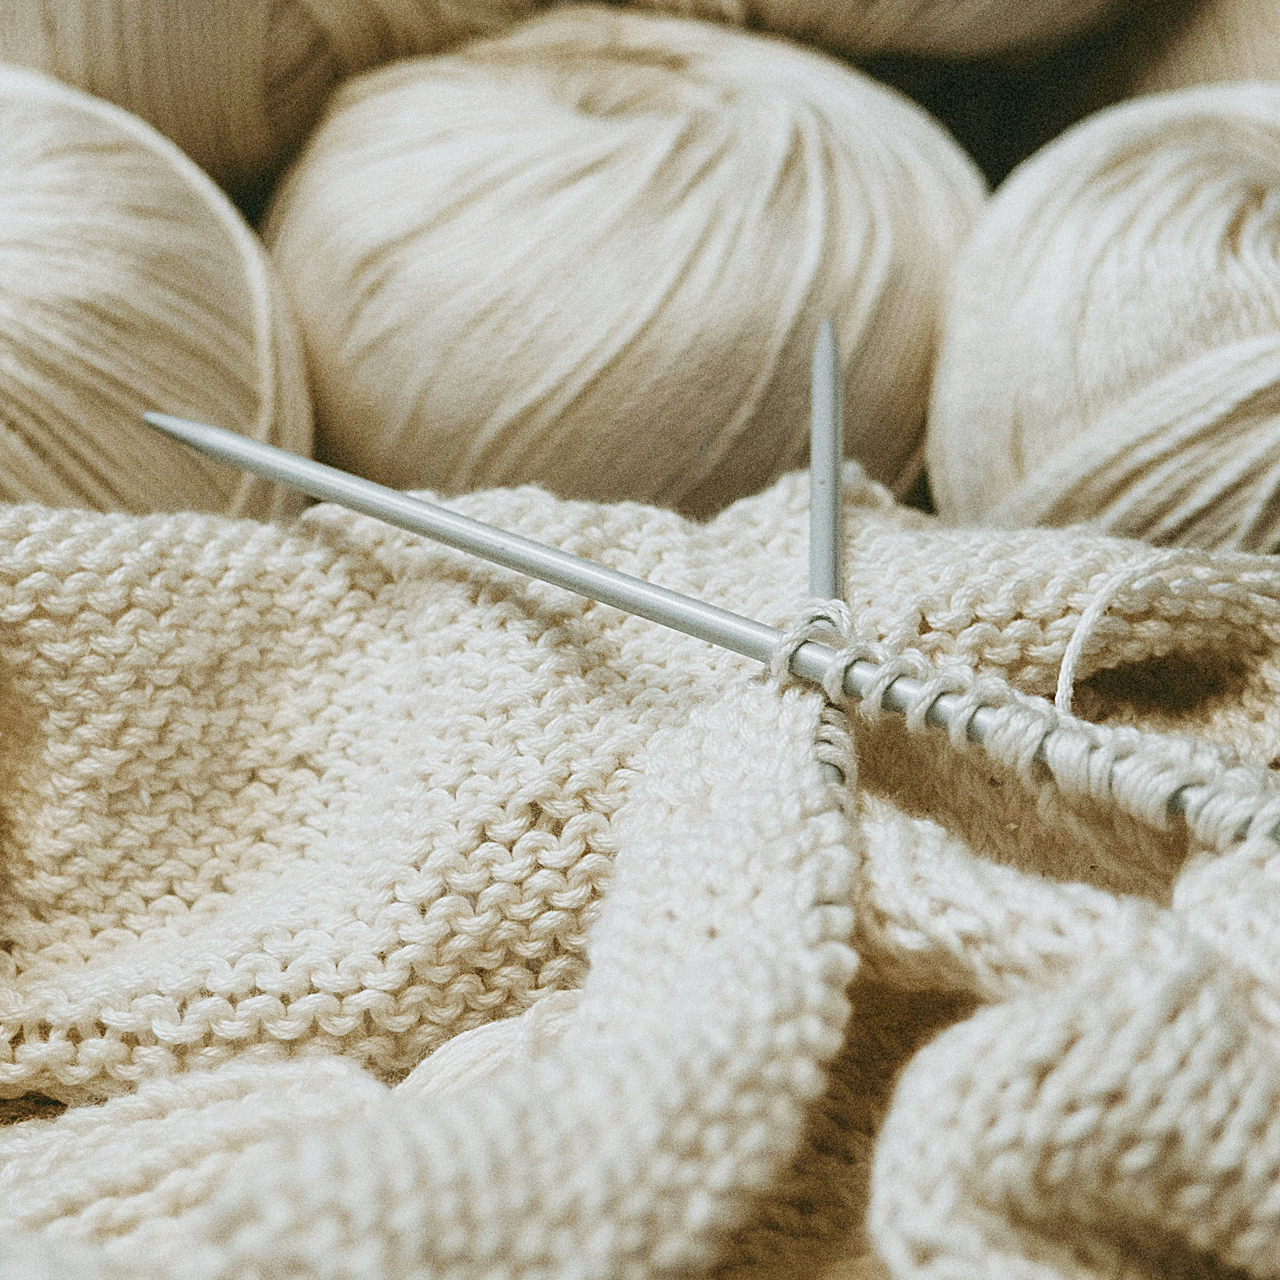 Image of crochet needle and yarn